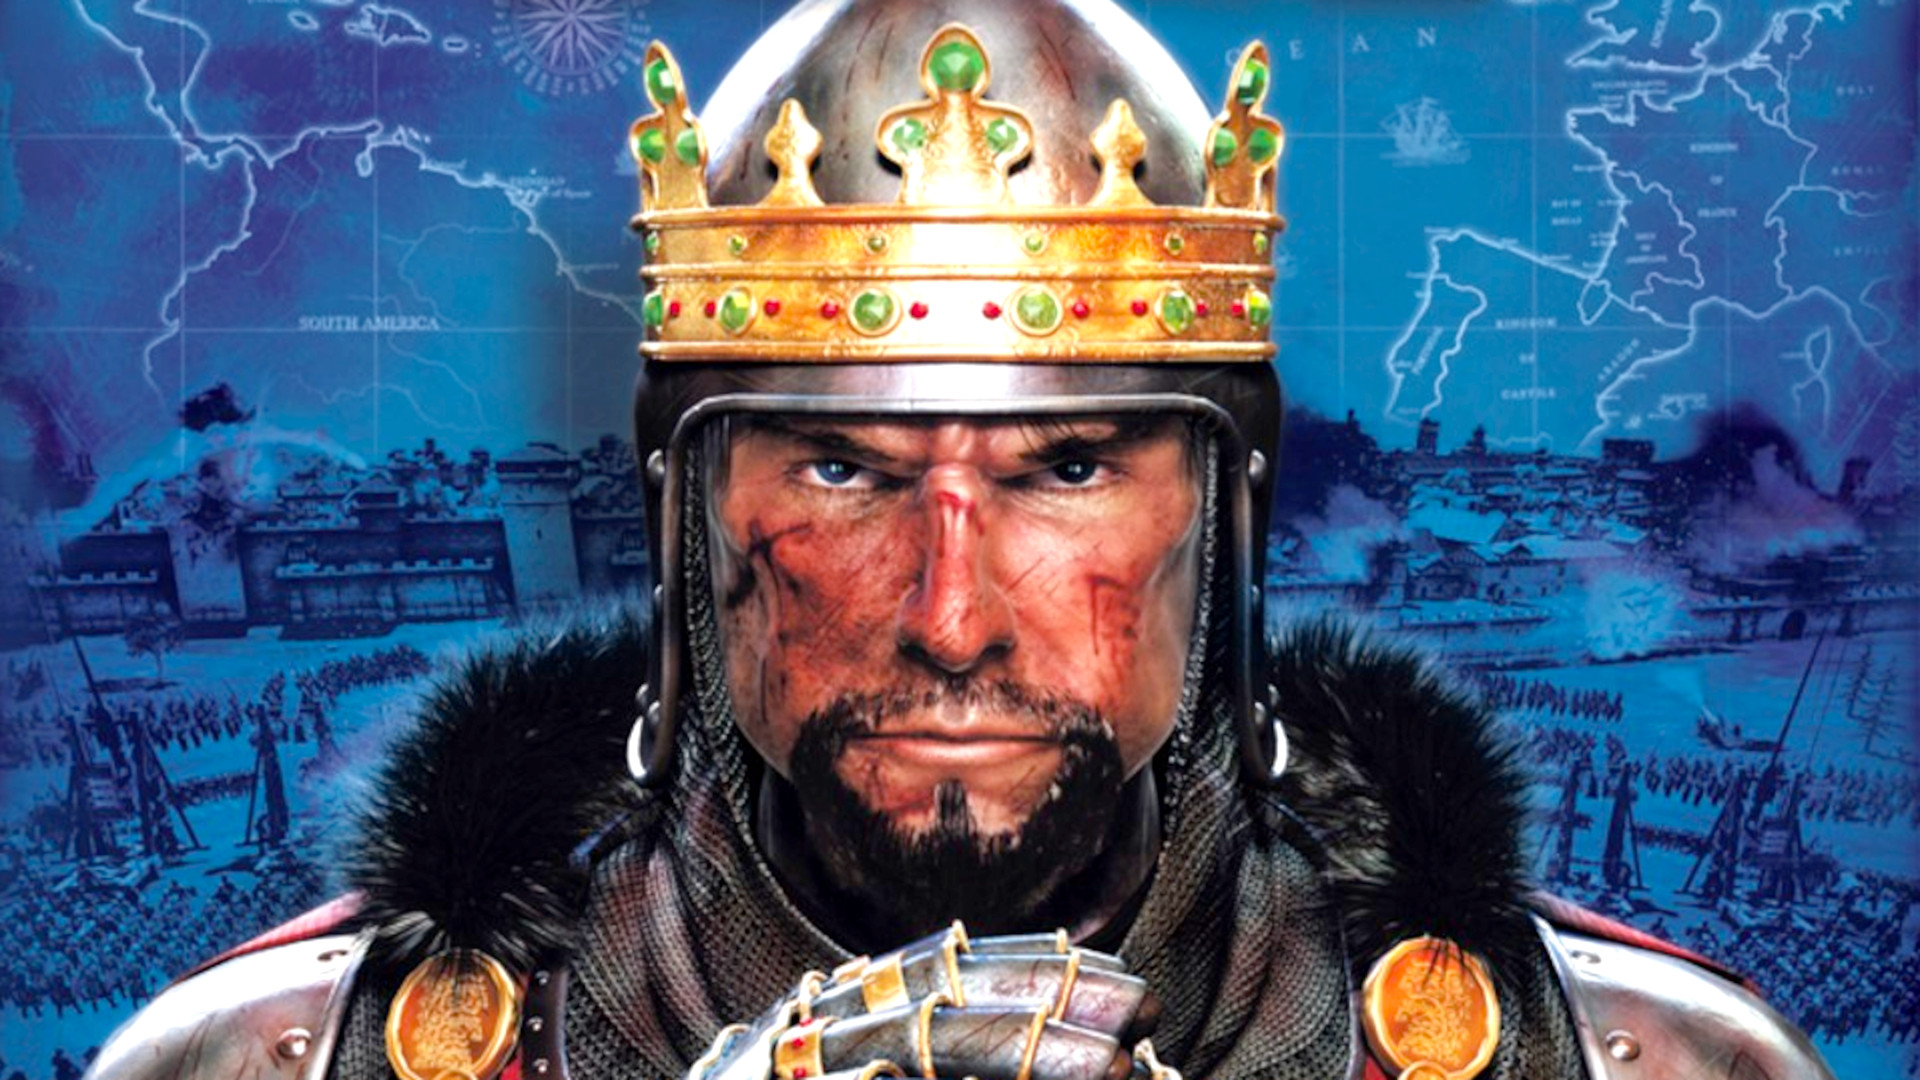 Drama faz de Three Kingdoms o melhor Total War histórico